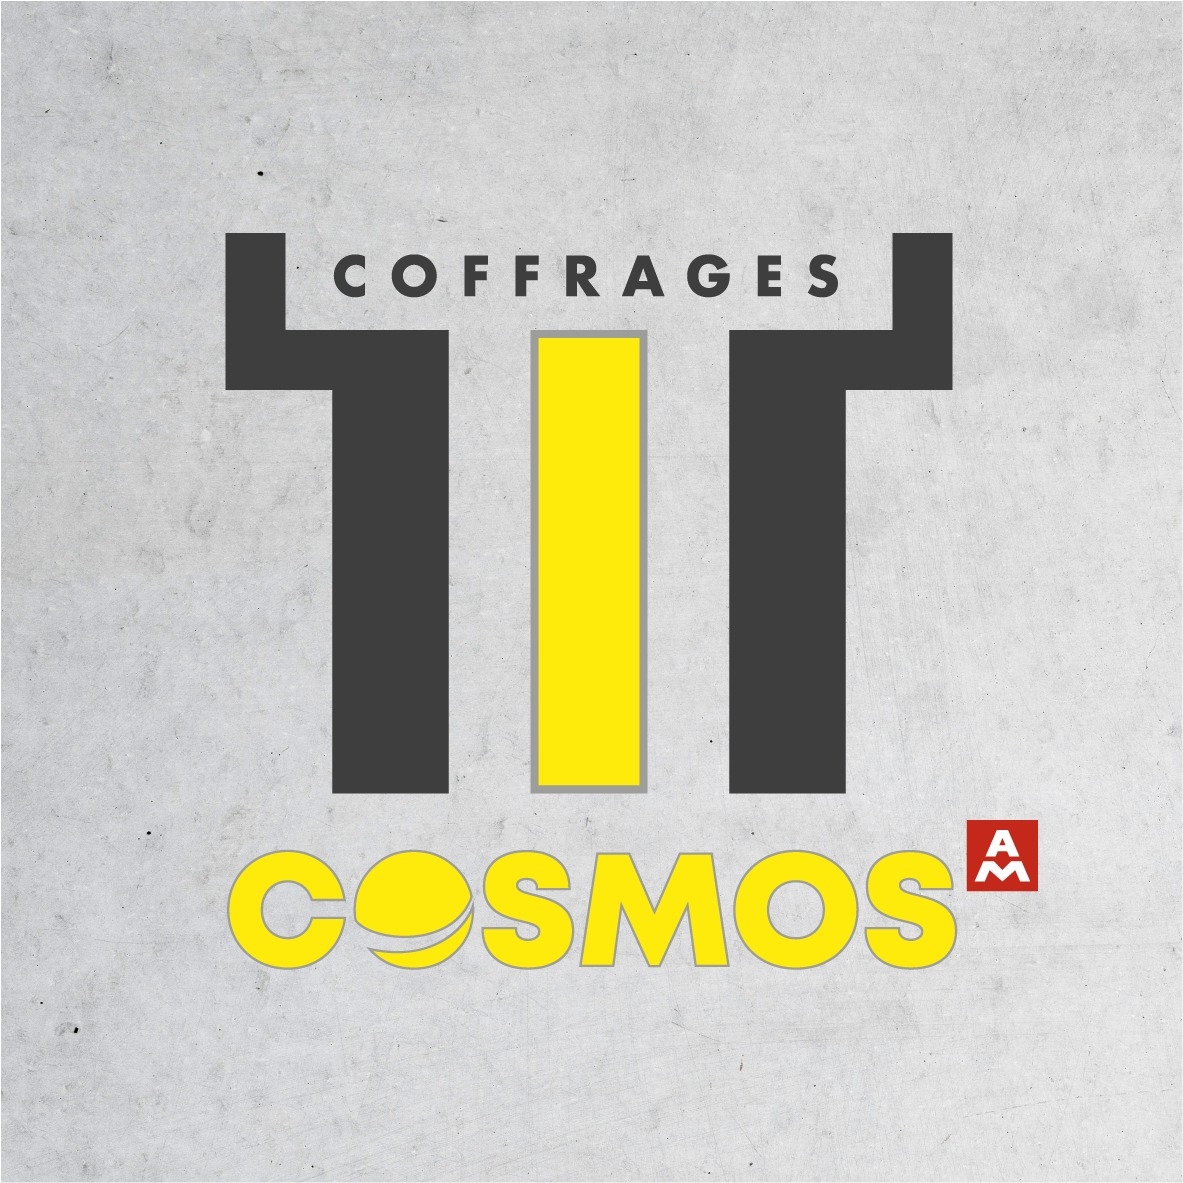 coffrage cosmos